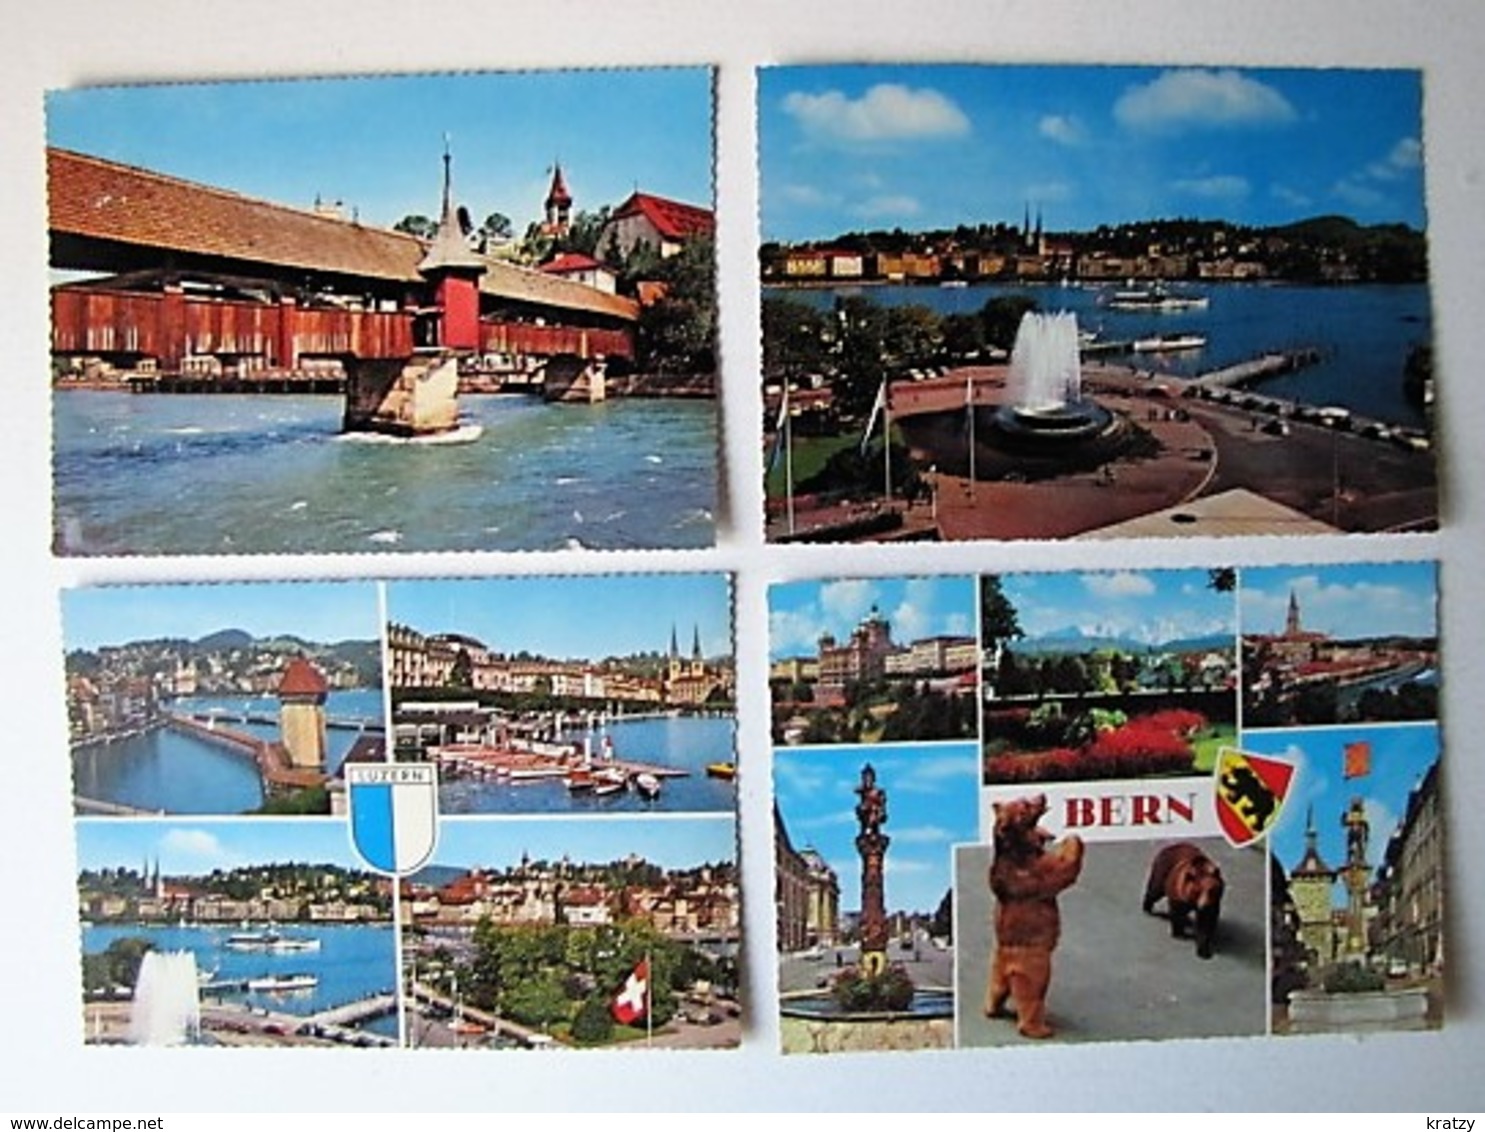 SUISSE - Lot 28 - Vues de Villes et de Villages - 100 cartes postales différentes